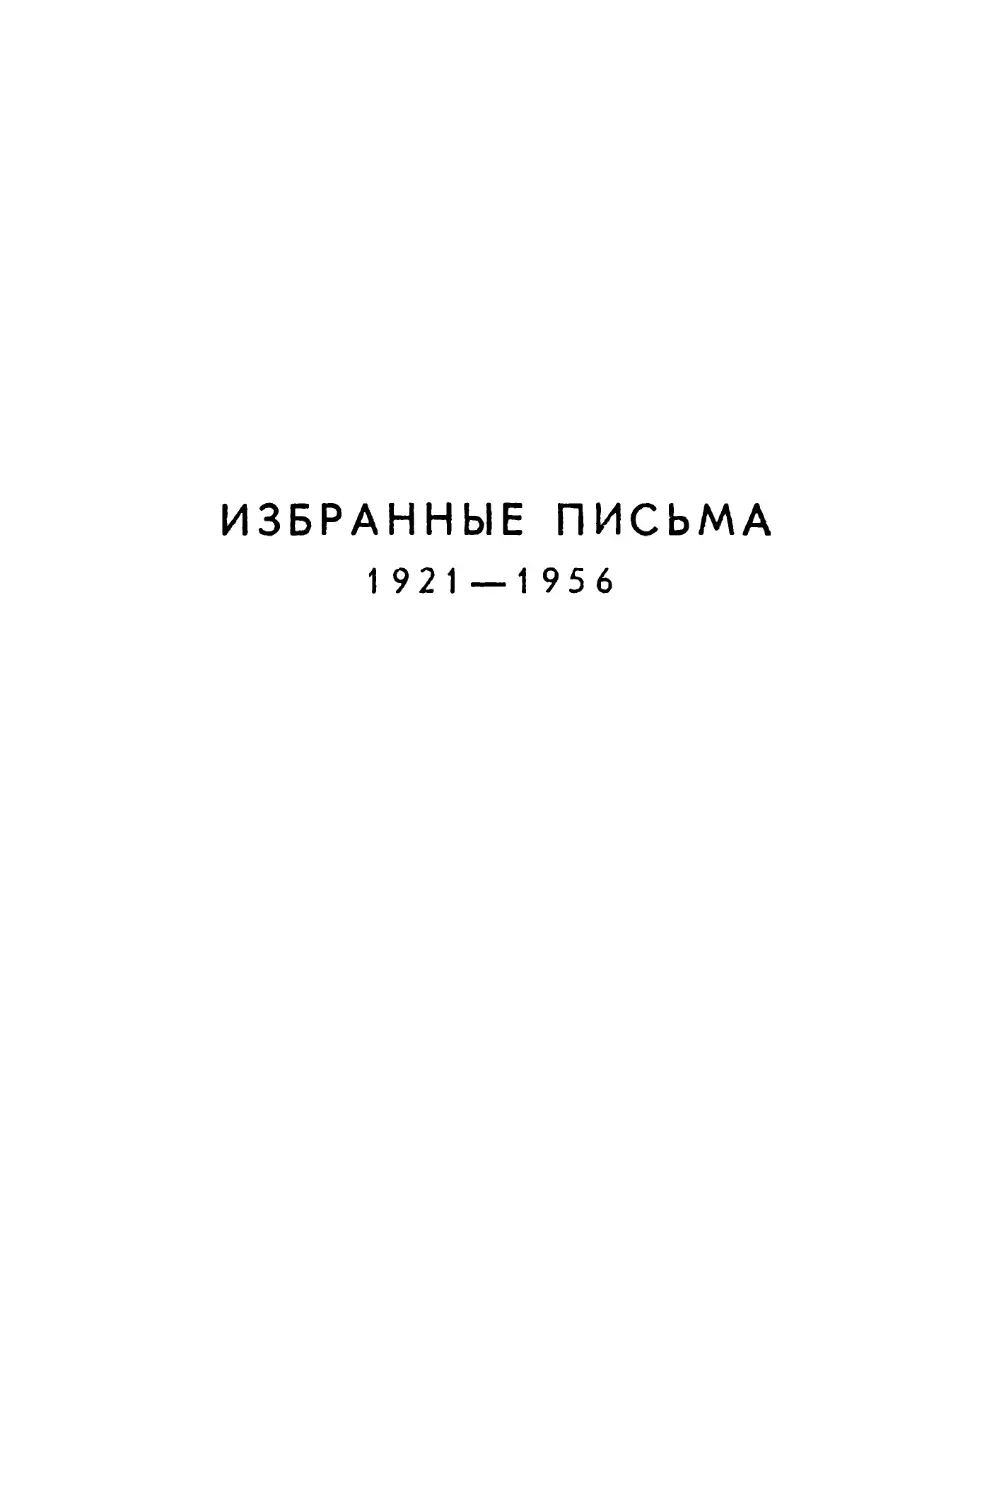 ИЗБРАННЫЕ ПИСЬМА 1921 - 1956